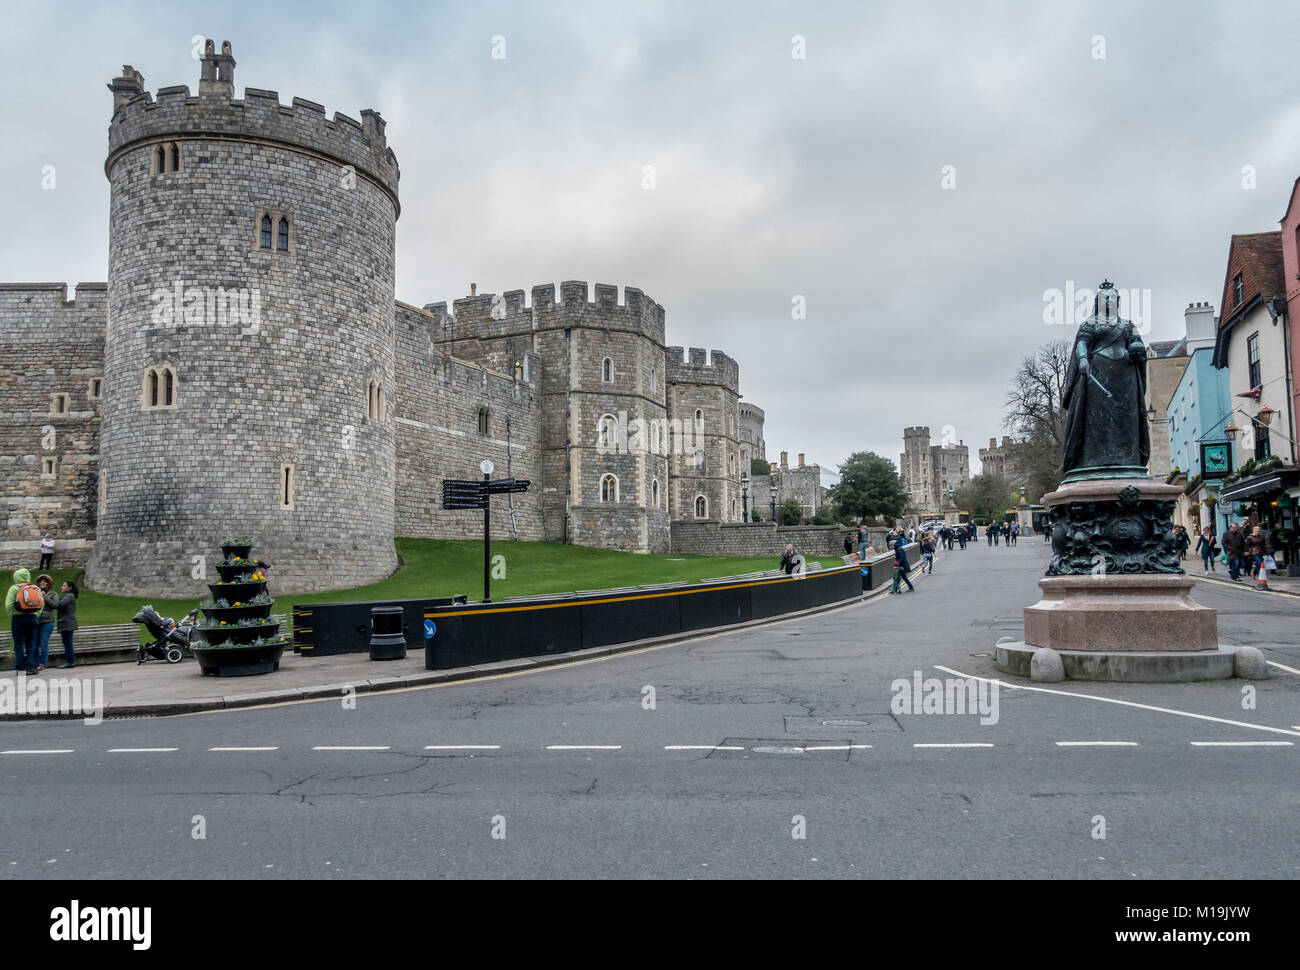 Come risultato o attentati terroristici che coinvolgono autoveicoli in altre ubicazioni, brutto, nero anti-barriere del veicolo sono state collocate nei pressi del Castello di Windsor per proteggere i visitatori. Foto Stock